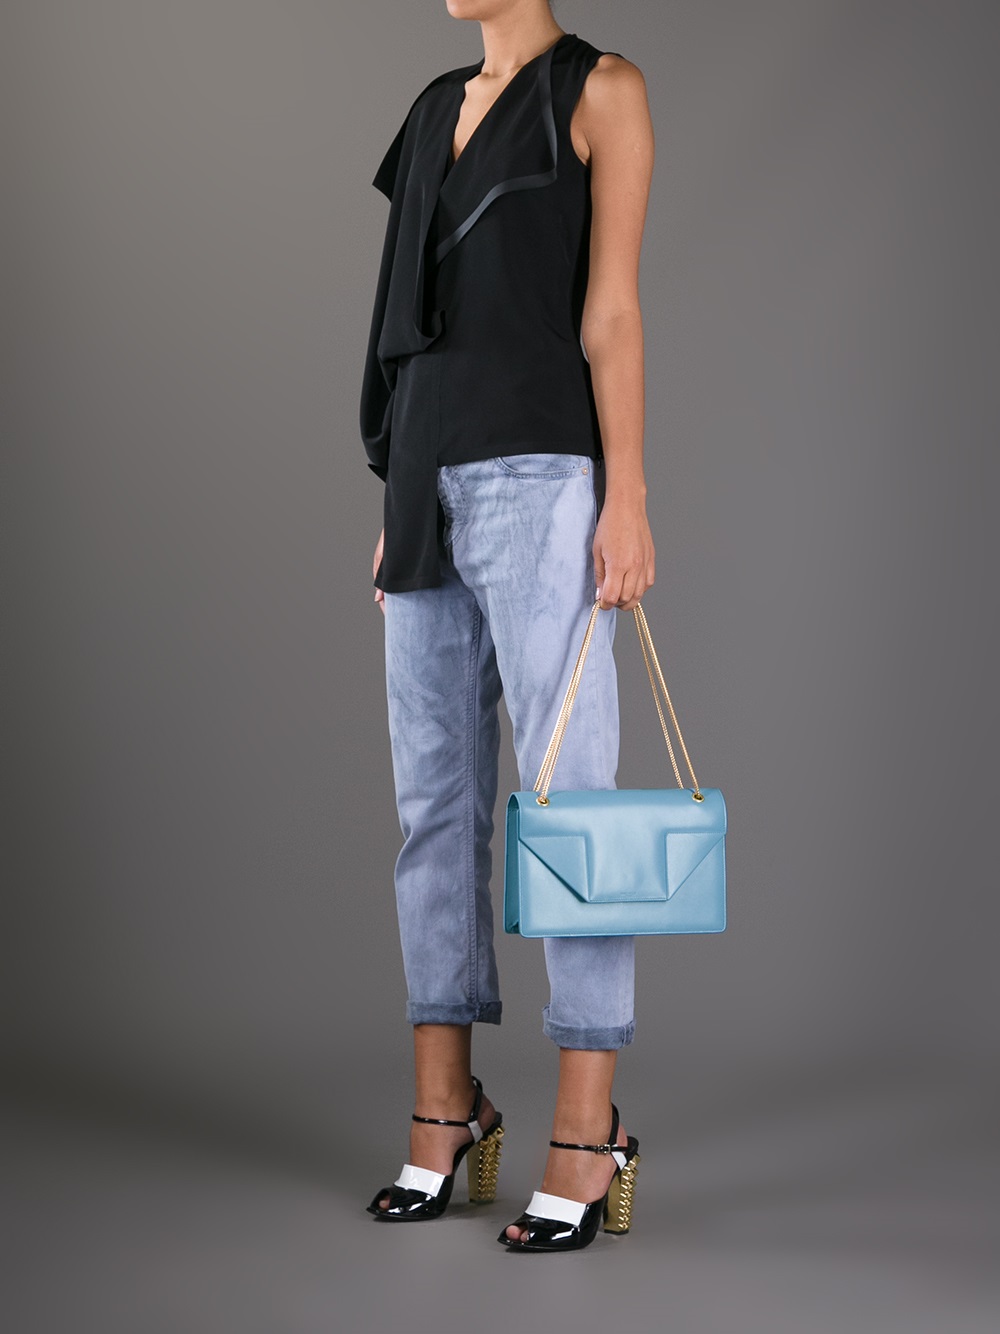 Replica Ysl Handbags – Best Yves Saint Laurent Replica Bags